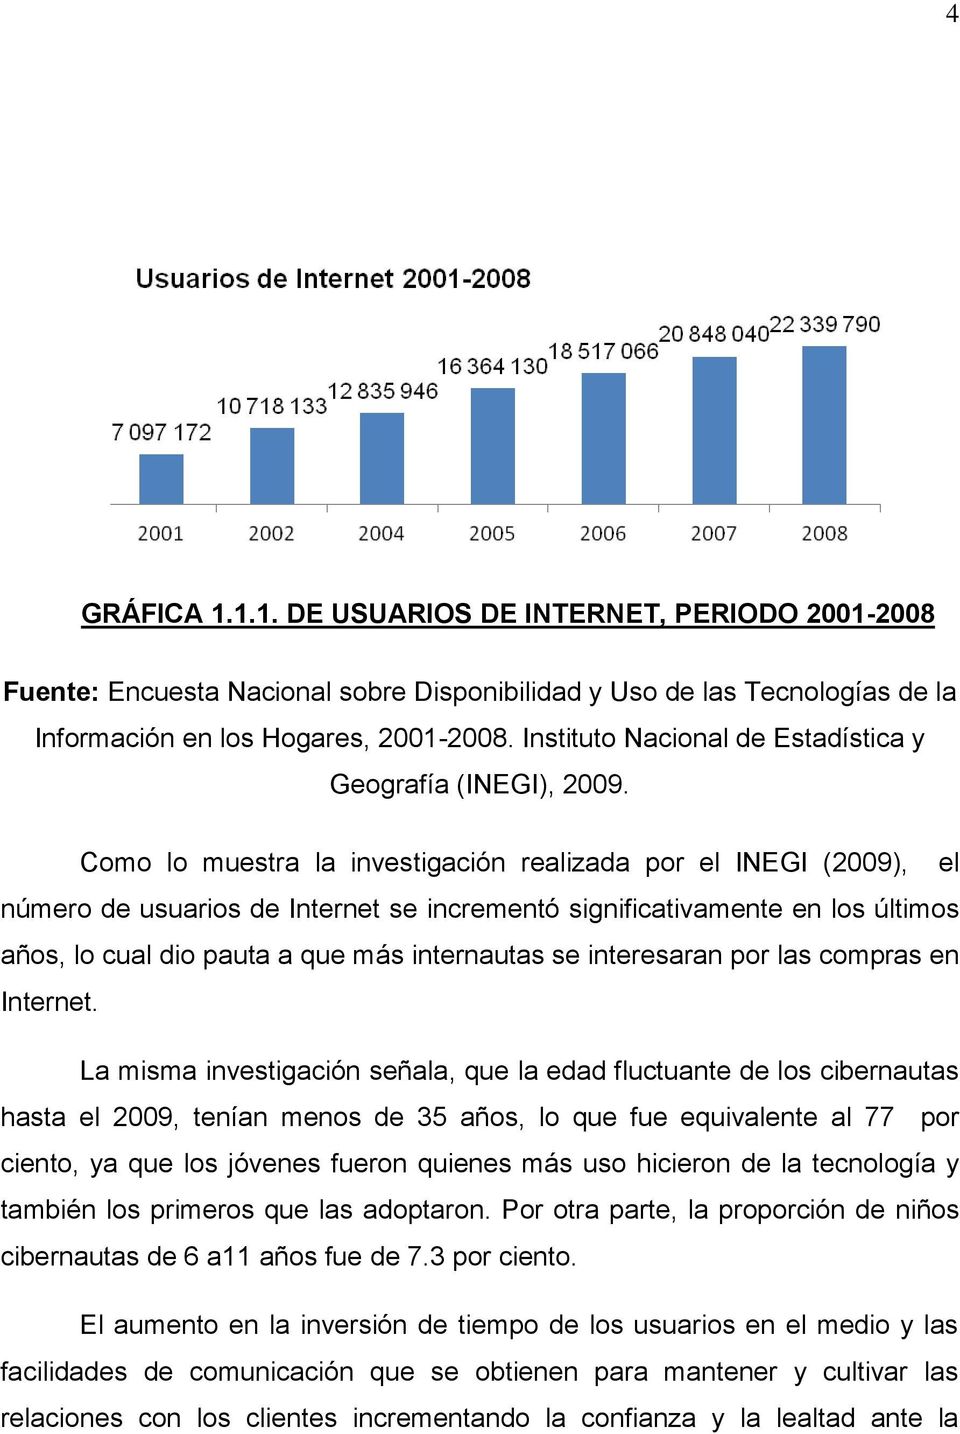 Como lo muestra la investigación realizada por el INEGI (2009), el número de usuarios de Internet se incrementó significativamente en los últimos años, lo cual dio pauta a que más internautas se